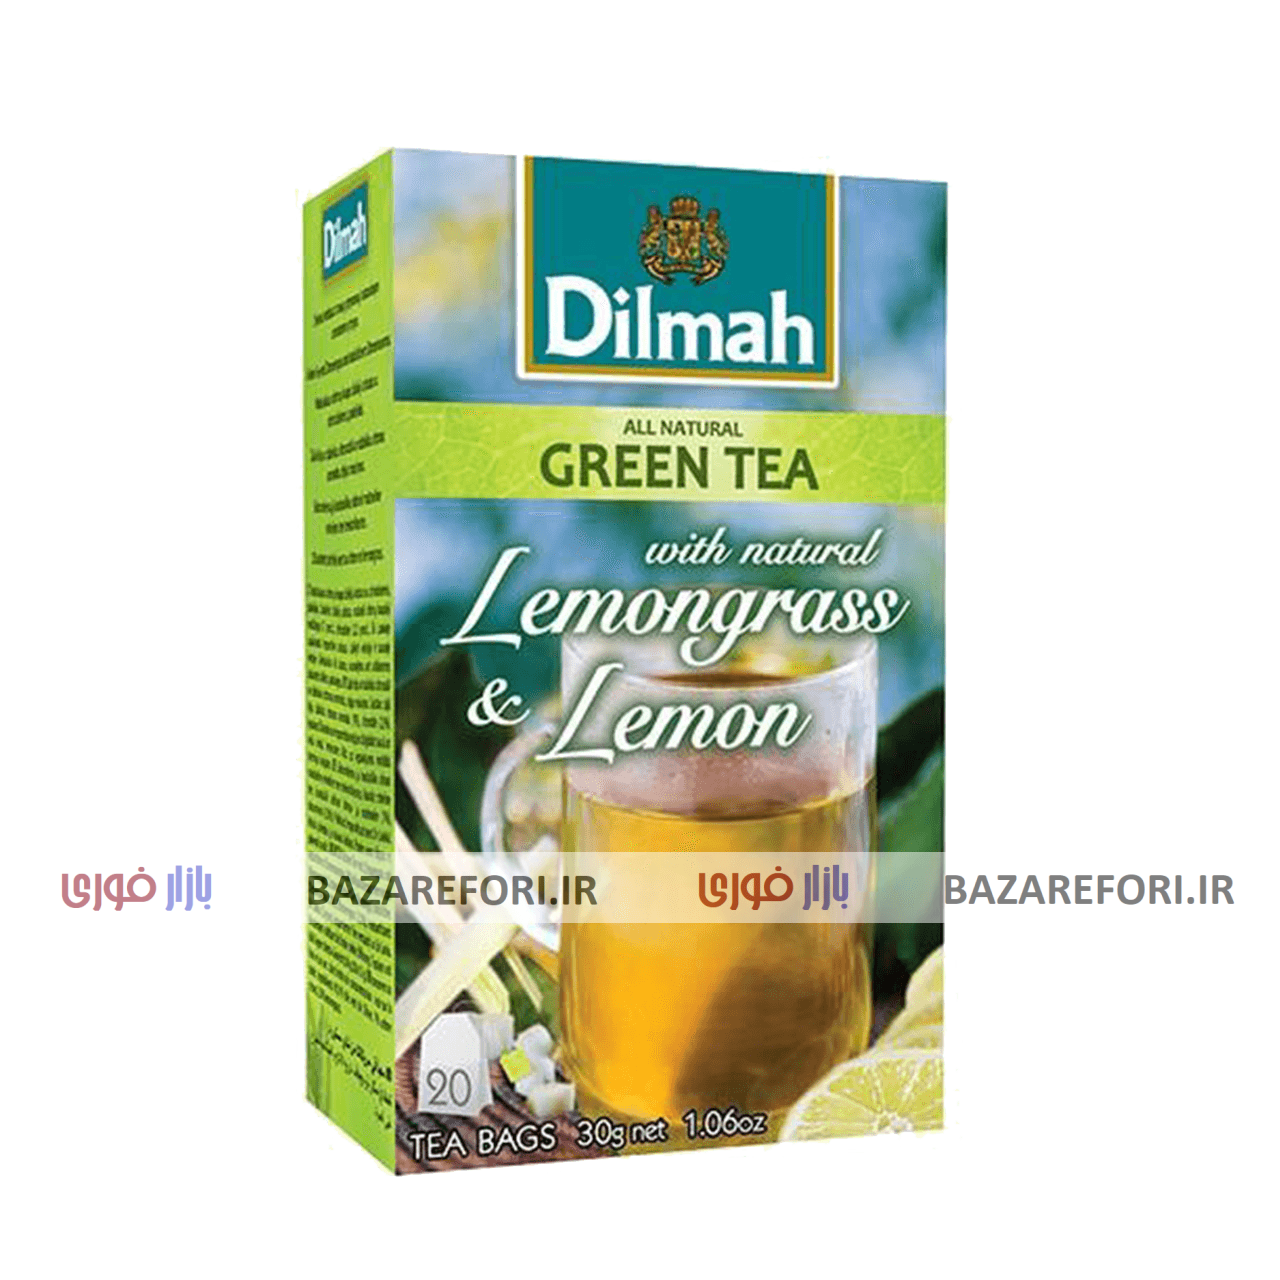 چای سبز  دیلما  با طعم با لیمو مدل D8 بسته 20 عددی